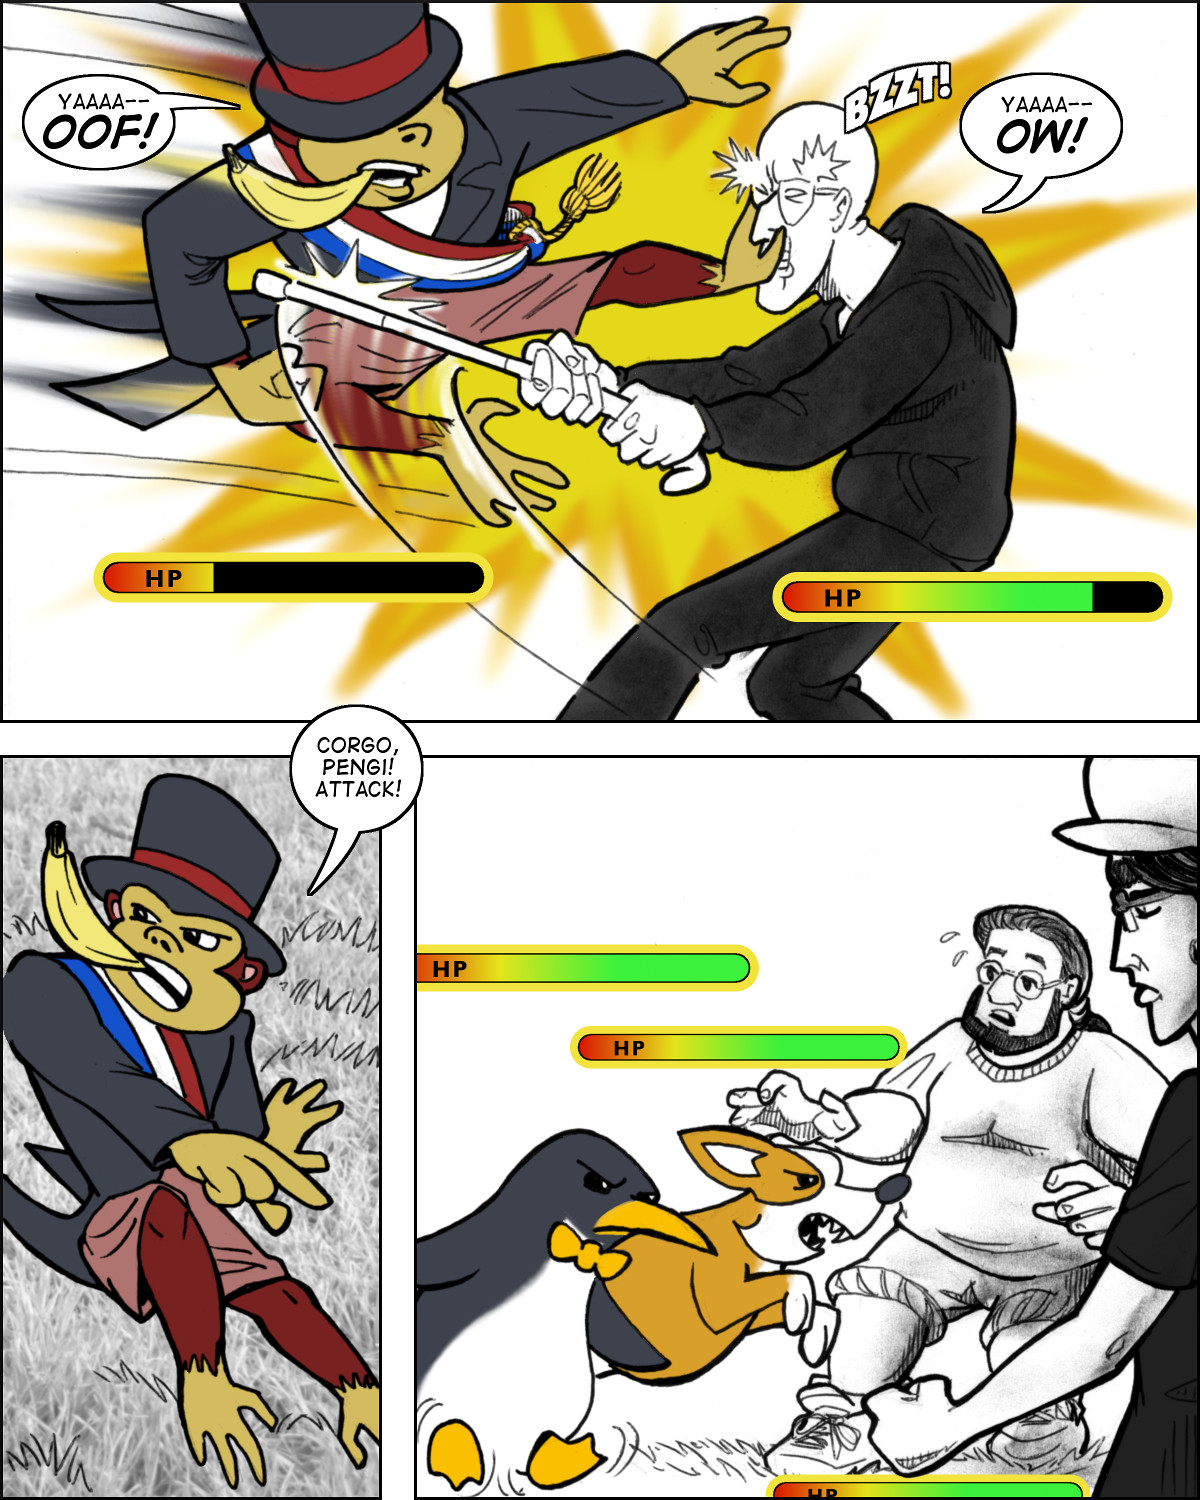 Virtual Monkey Mayov versus Tentacle Man